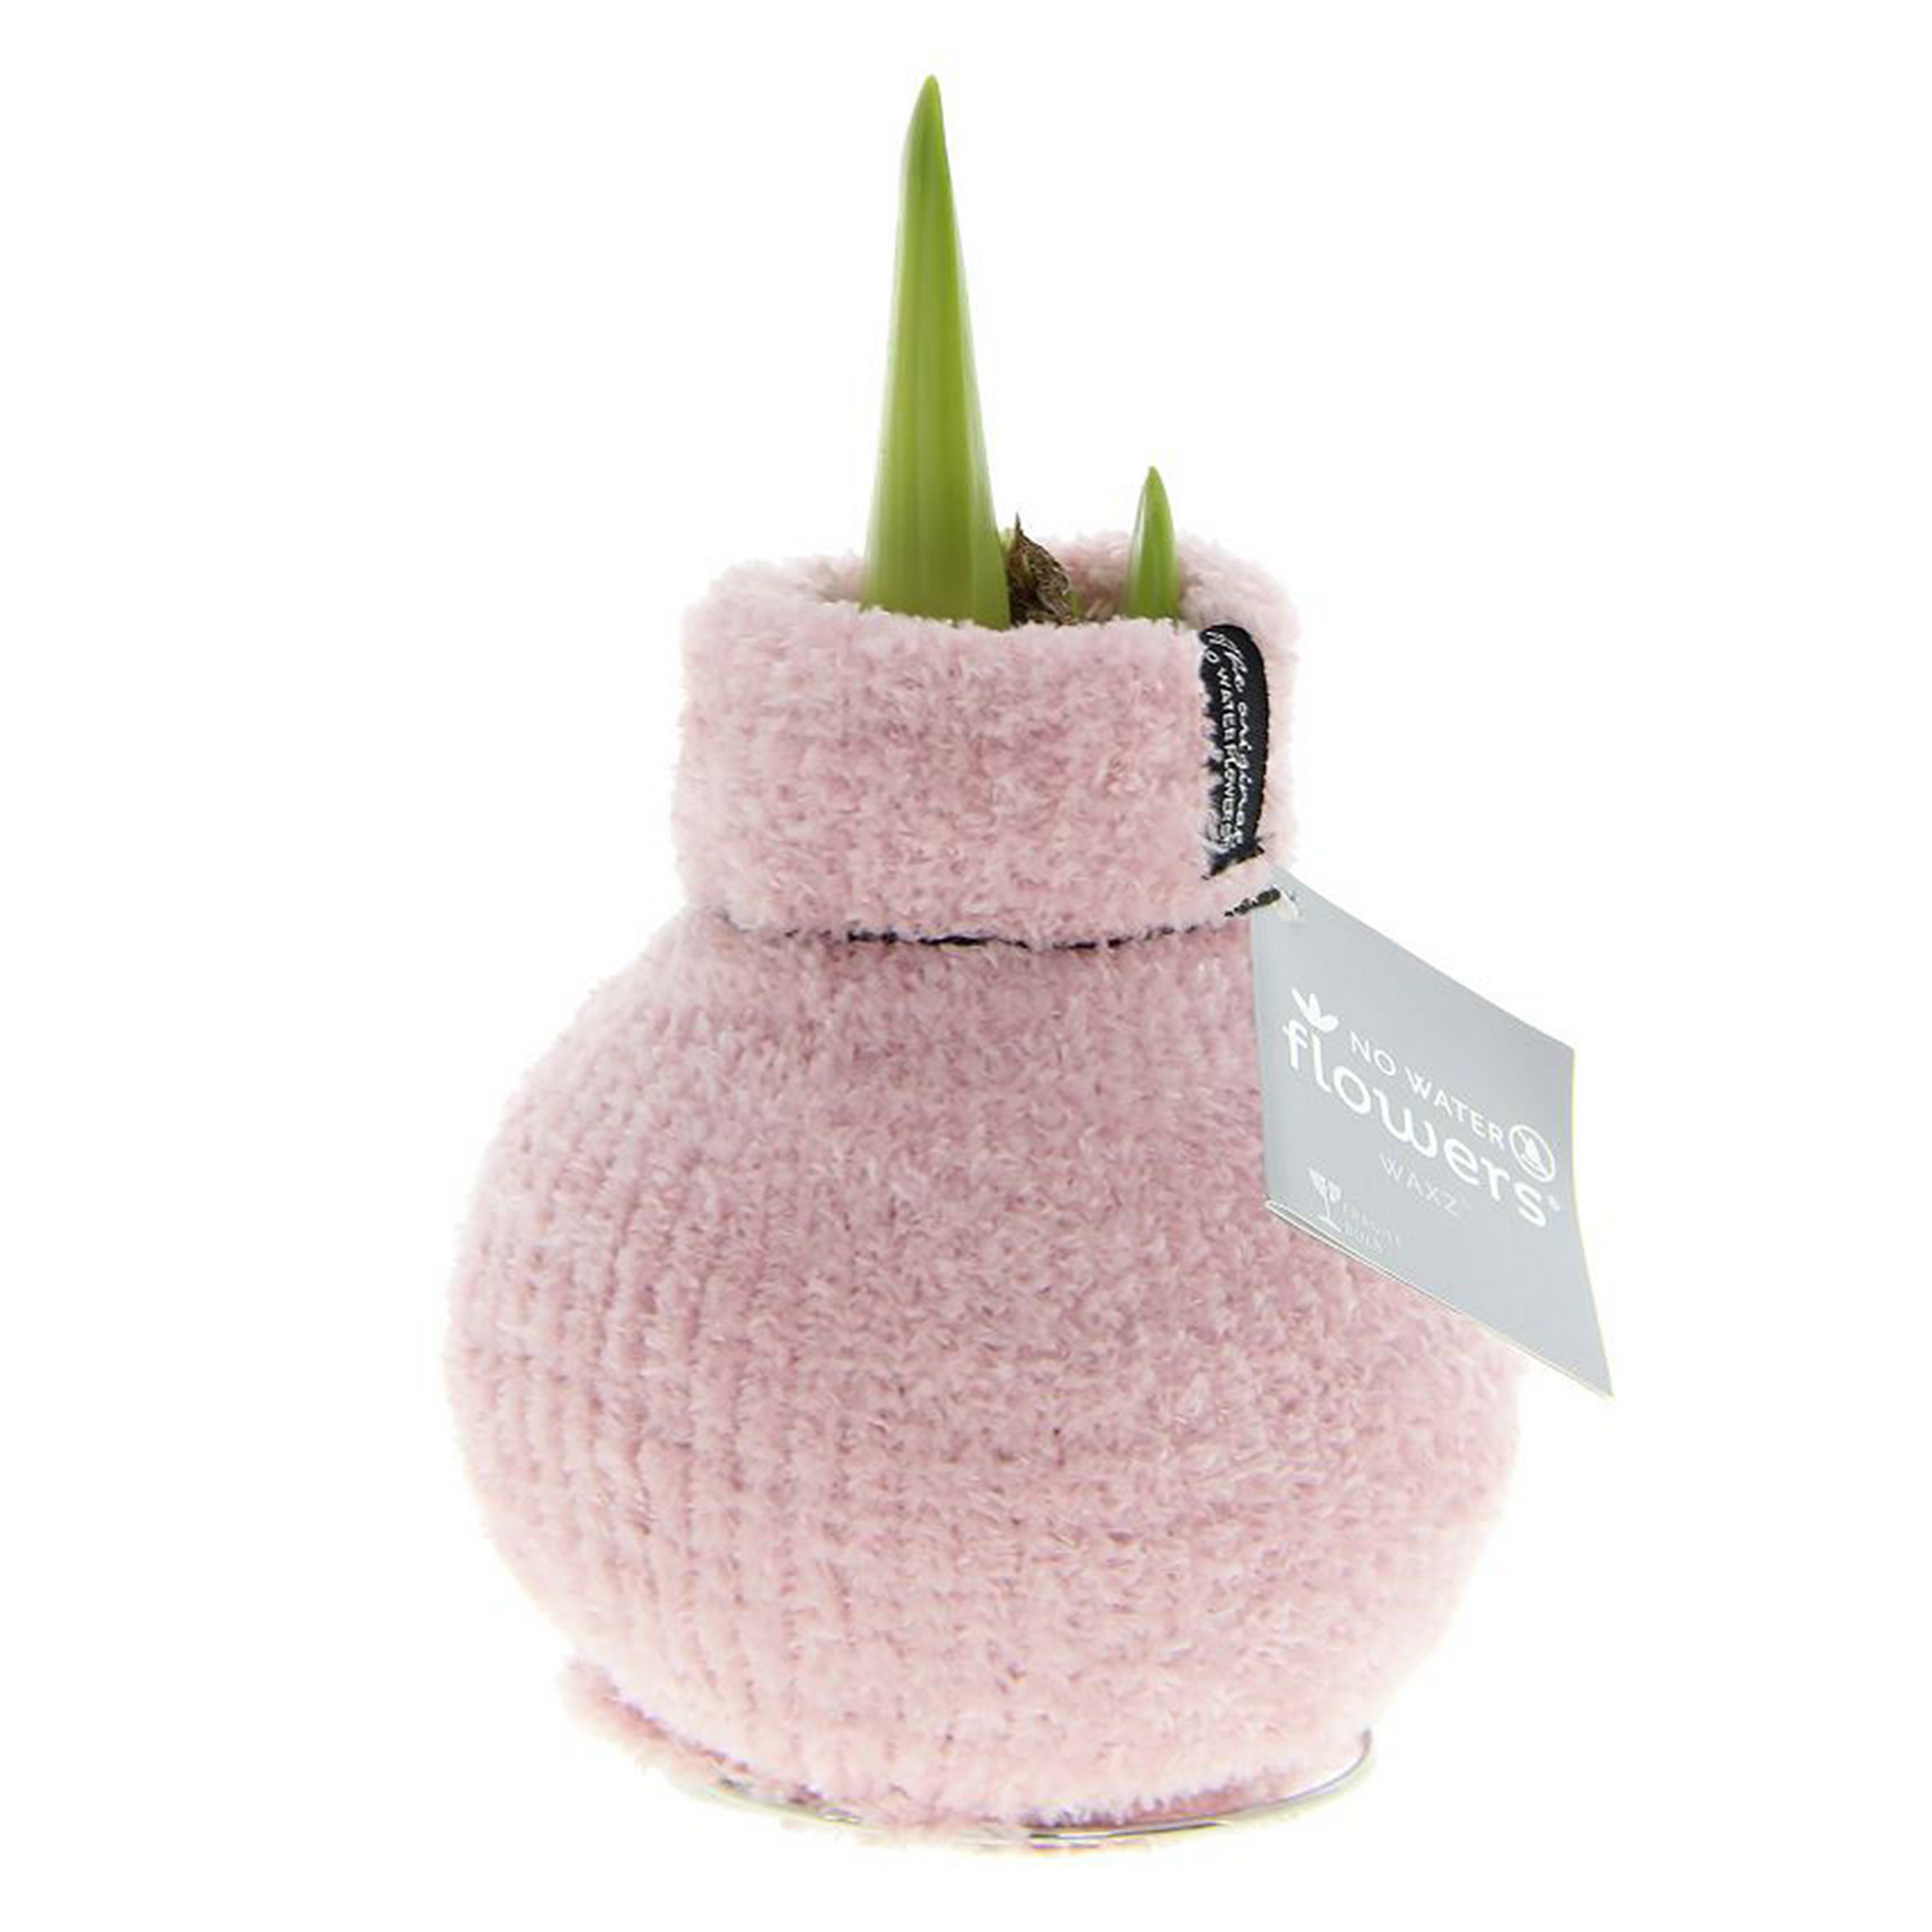 Amaryllis gewachst im Söckchen 'Cozy Fluffy' rosa + product picture